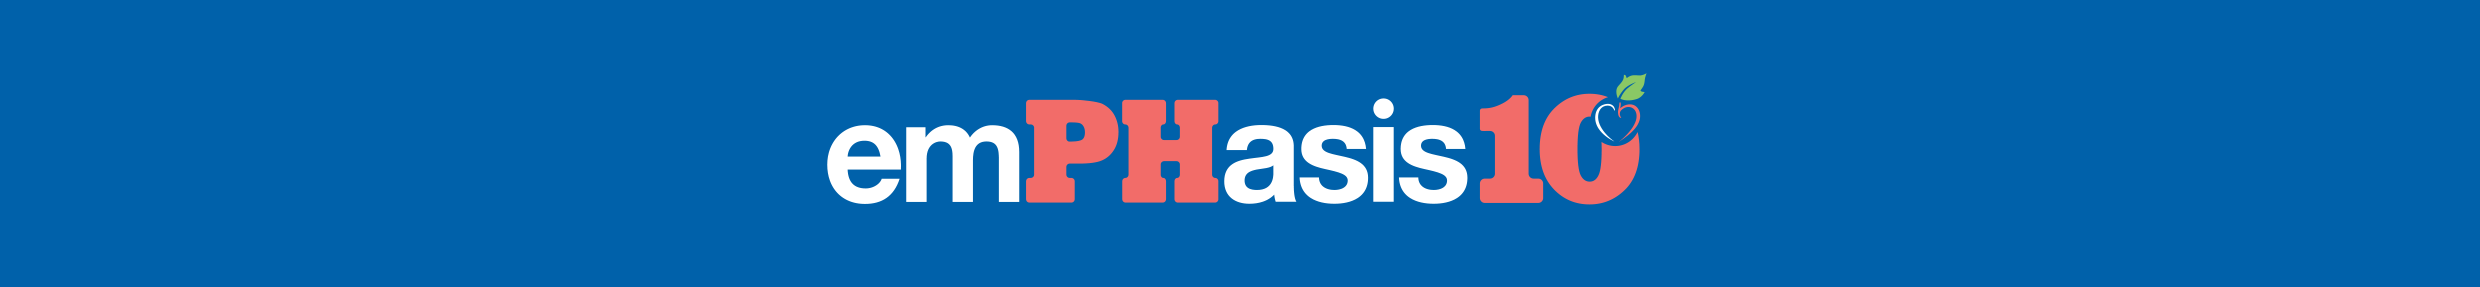 emPHasis-10 logo